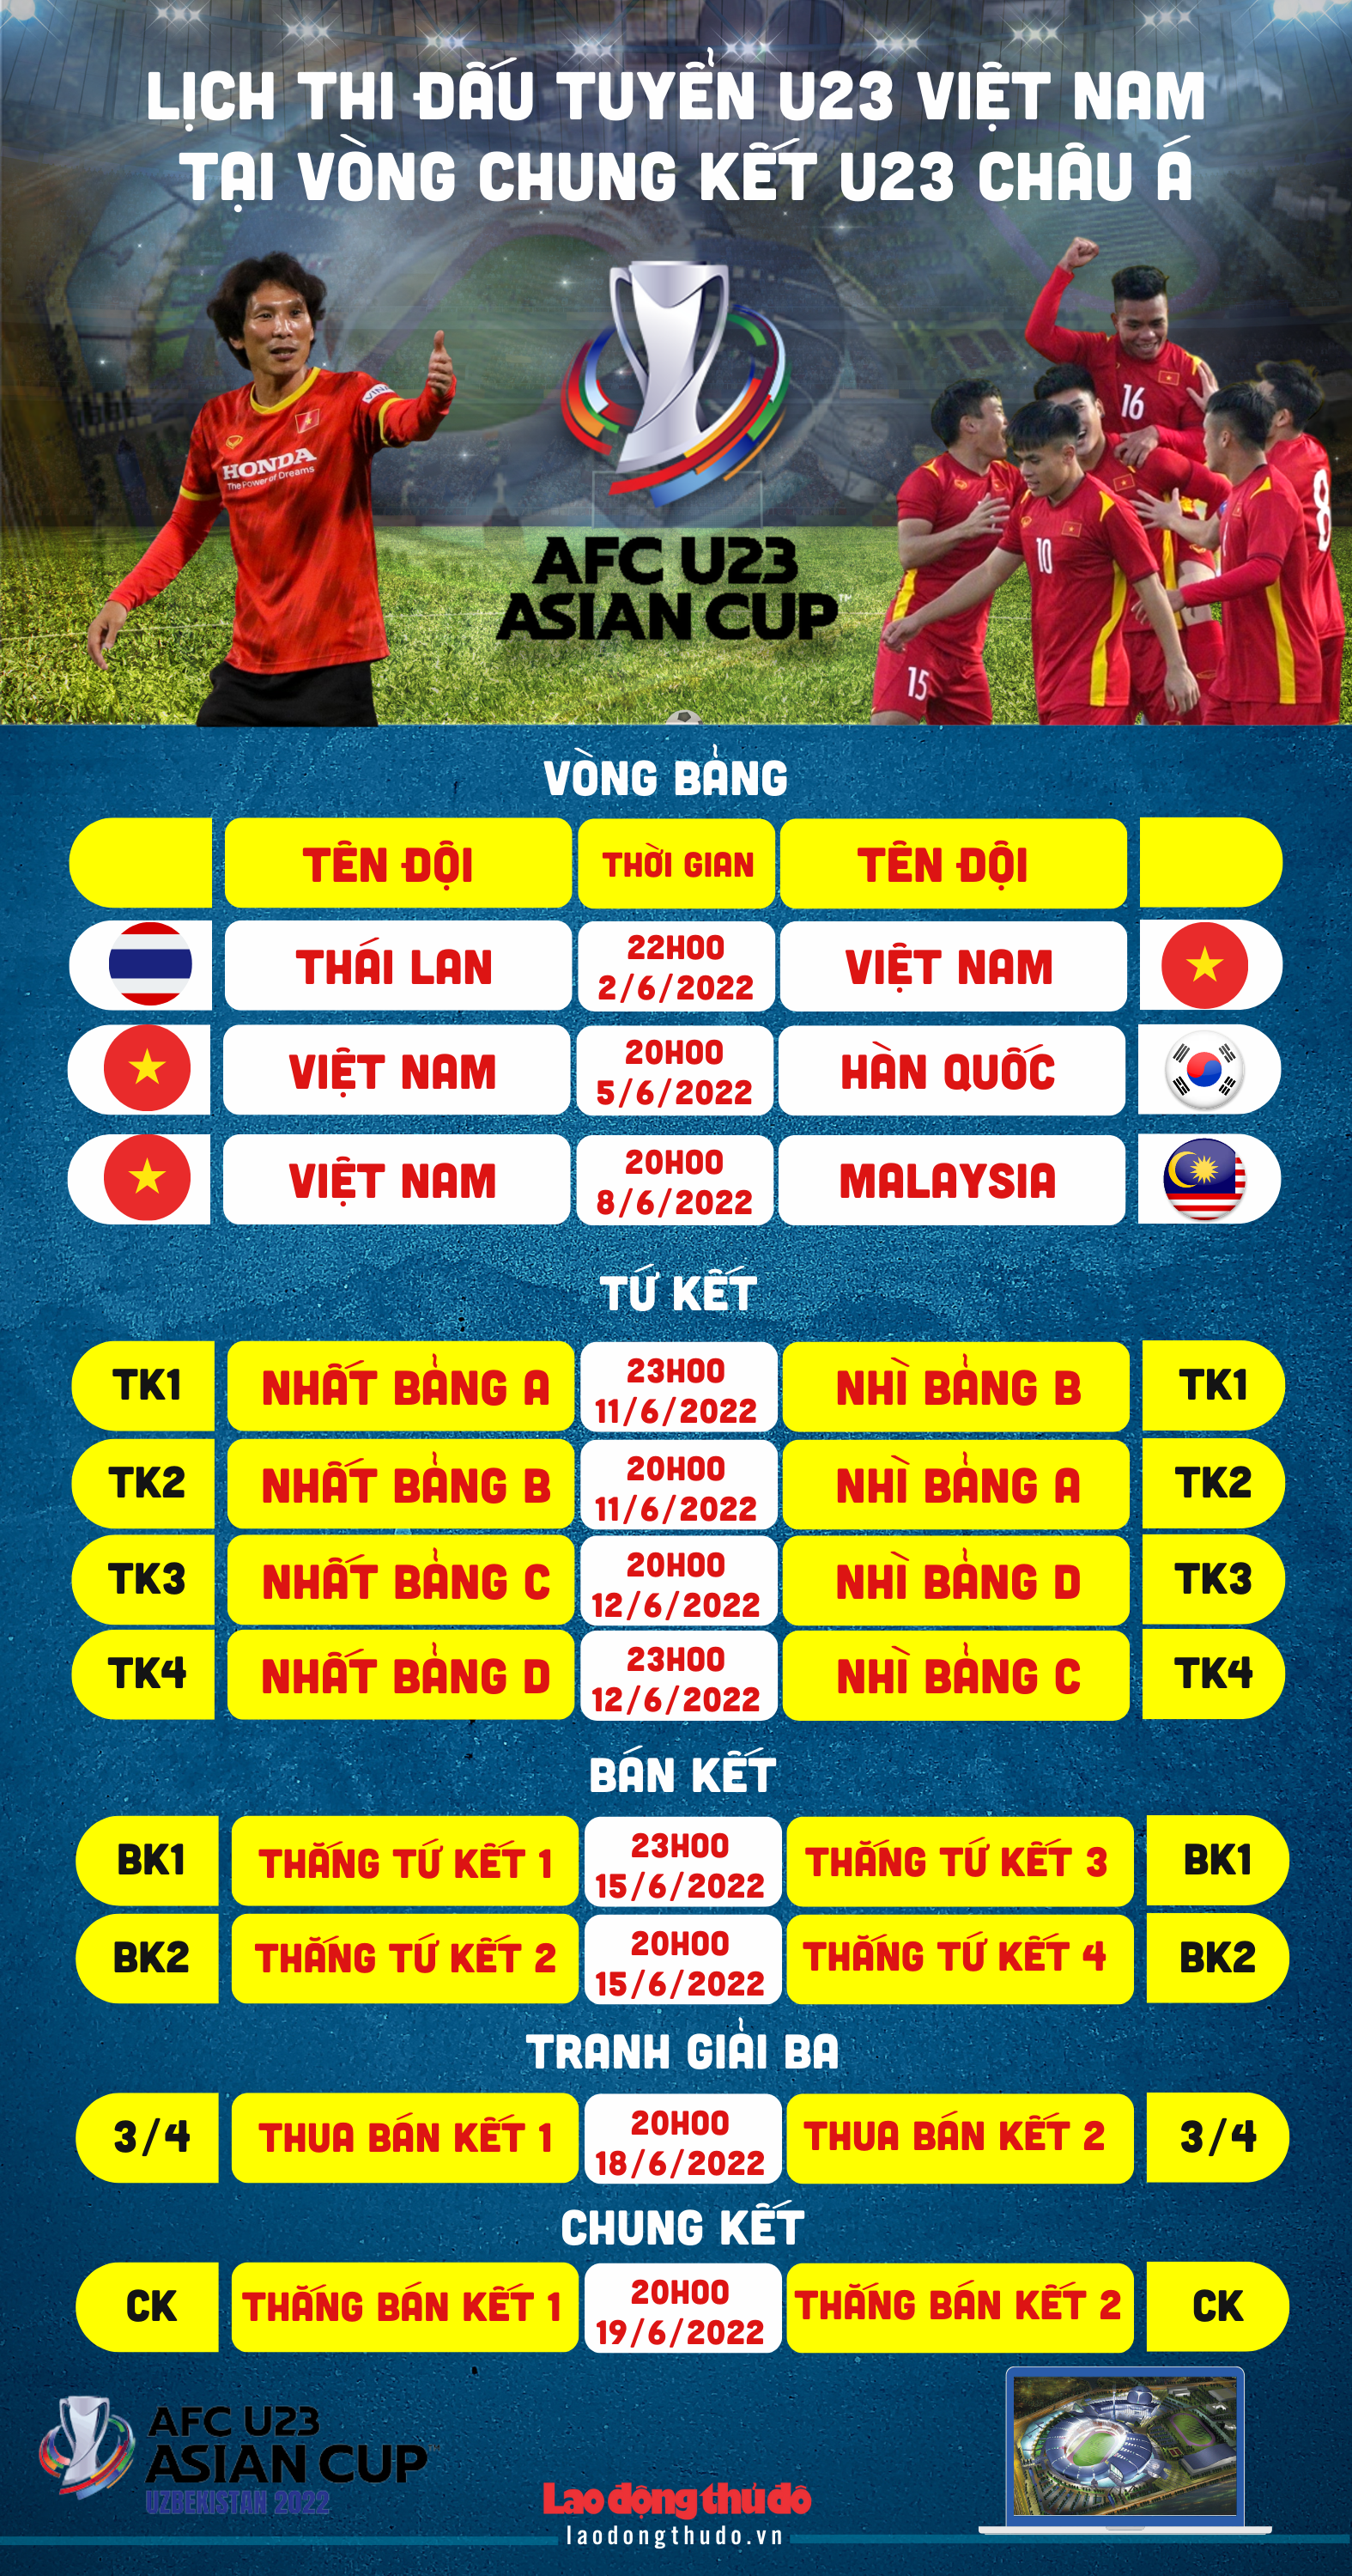 [Infographics] Lịch thi đấu tuyển U23 Việt Nam tại Vòng chung kết U23 châu Á